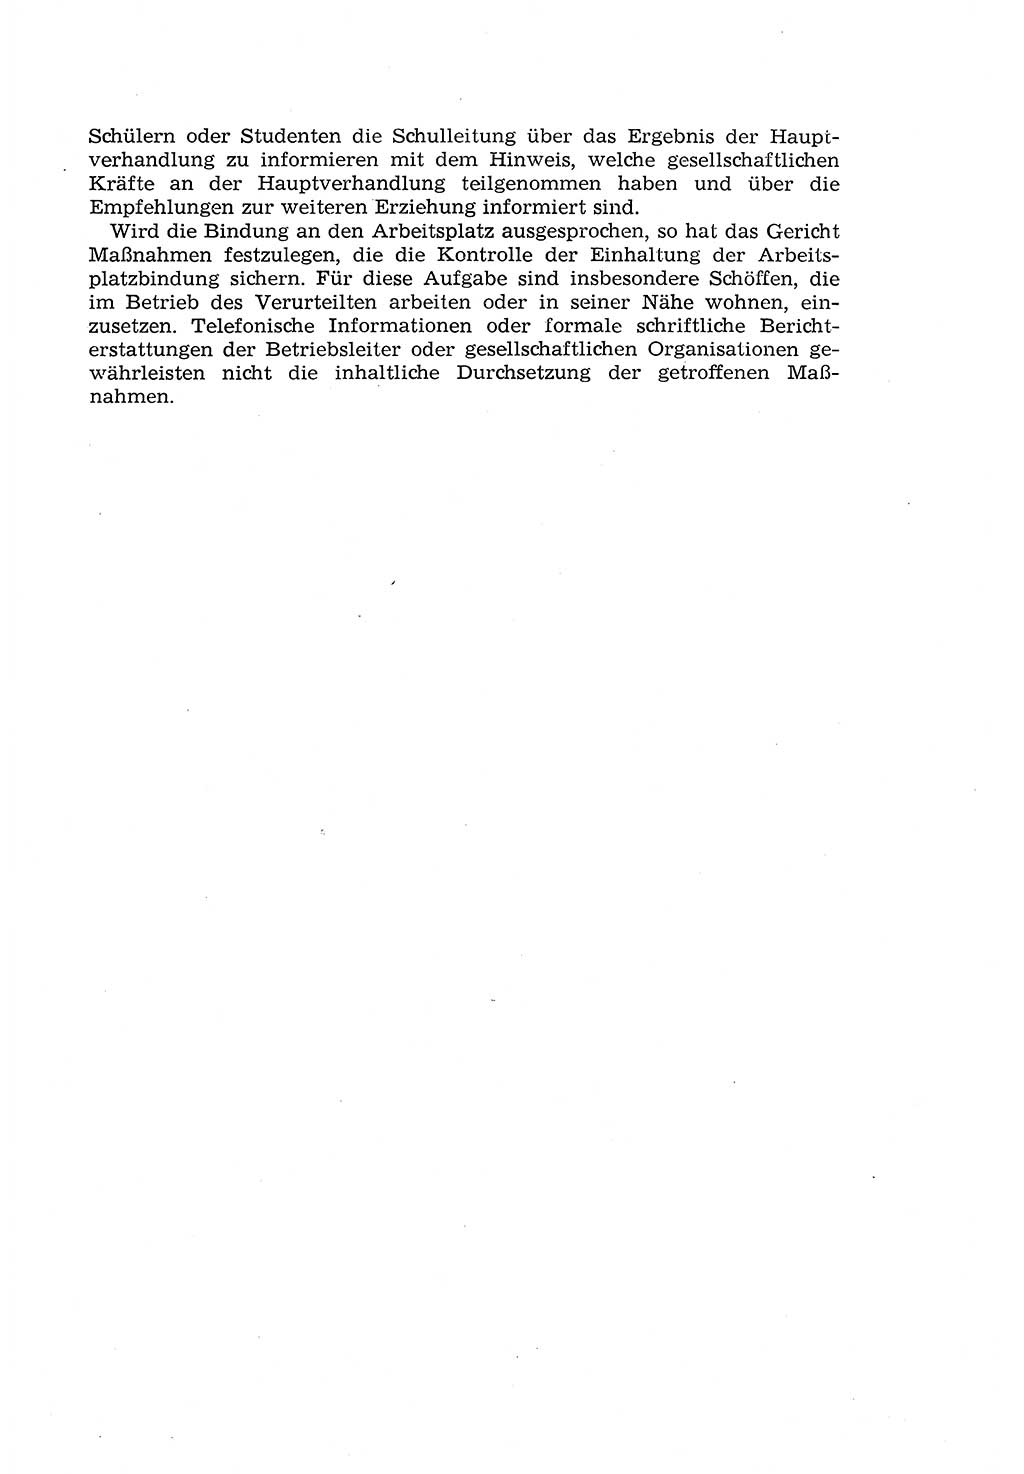 Die Mitwirkung der Werktätigen am Strafverfahren [Deutsche Demokratische Republik (DDR)] 1966, Seite 173 (Mitw. Str.-Verf. DDR 1966, S. 173)